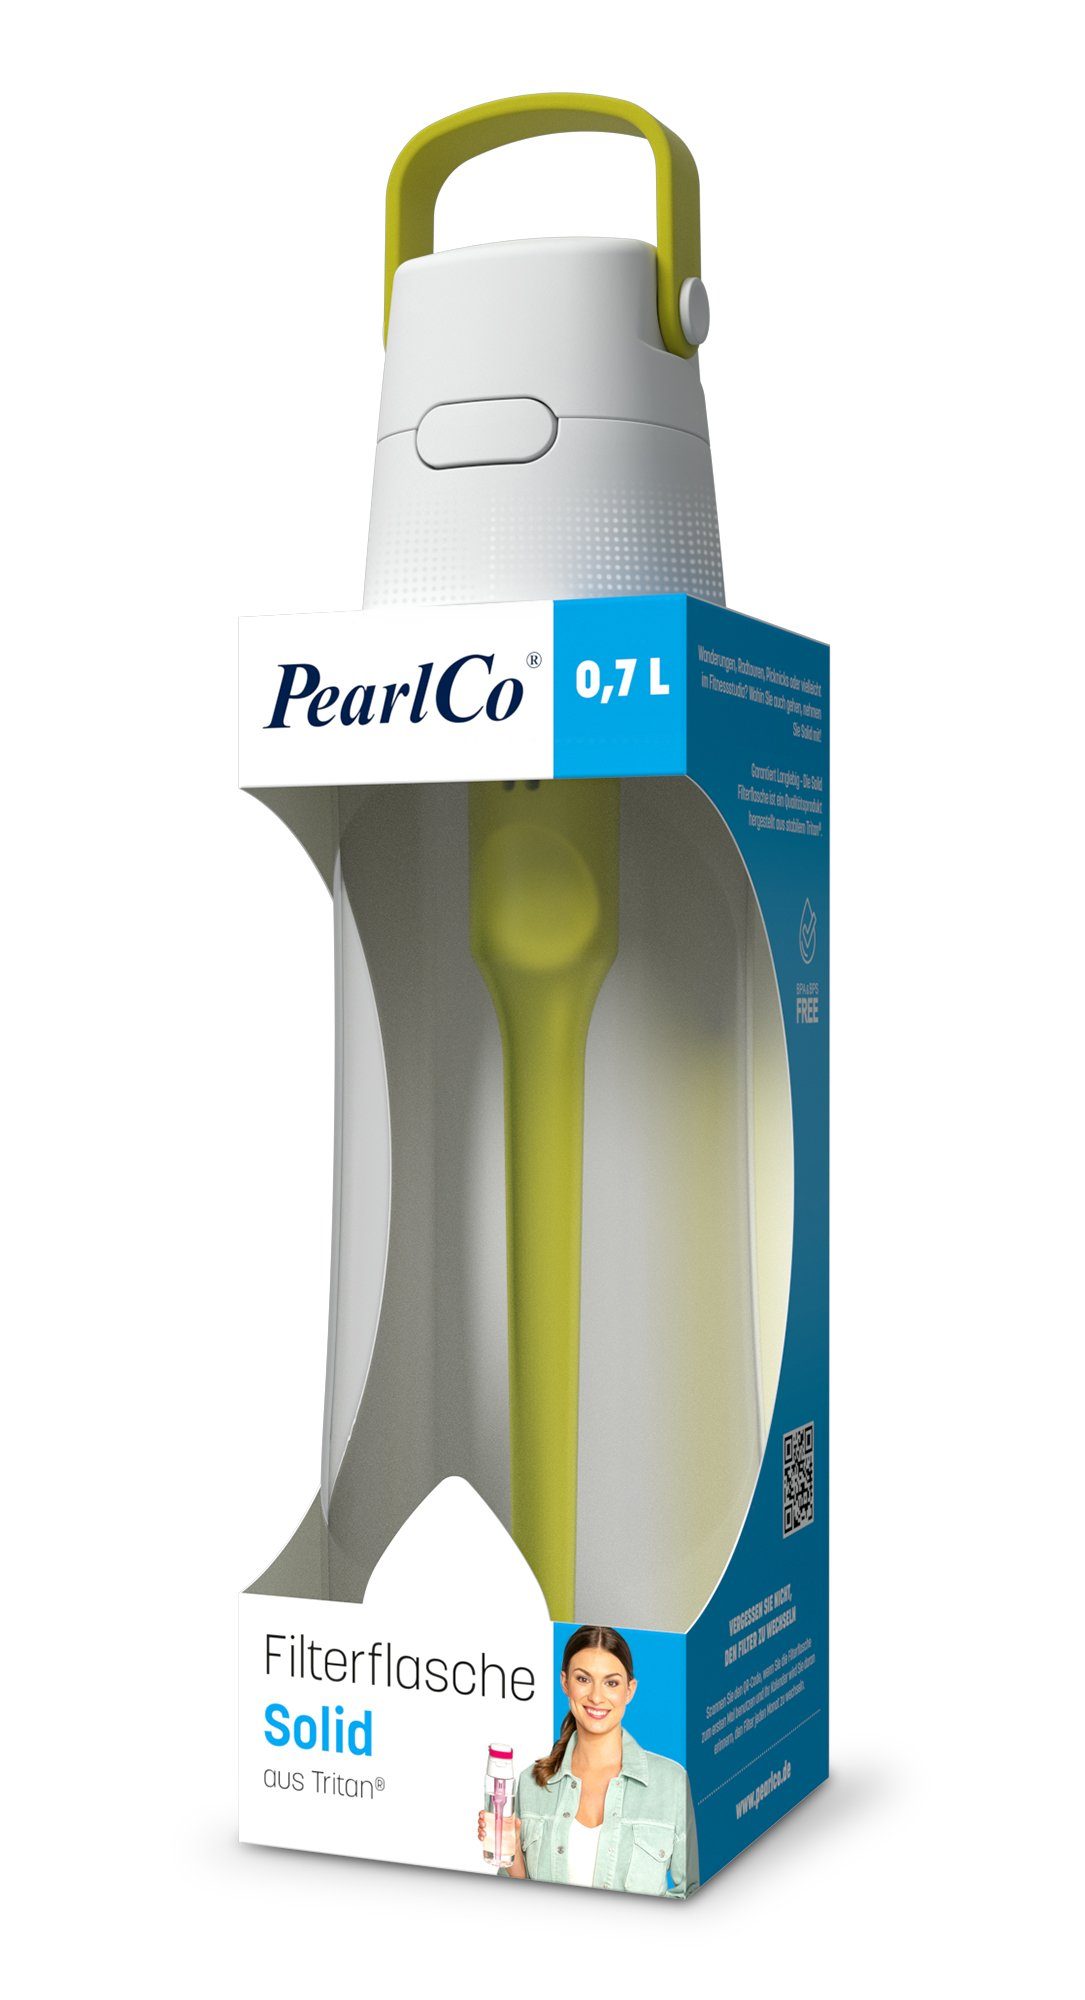 Liter Filter 0,7 SOLID mit PearlCo Trinkflasche Trinkflasche gelb